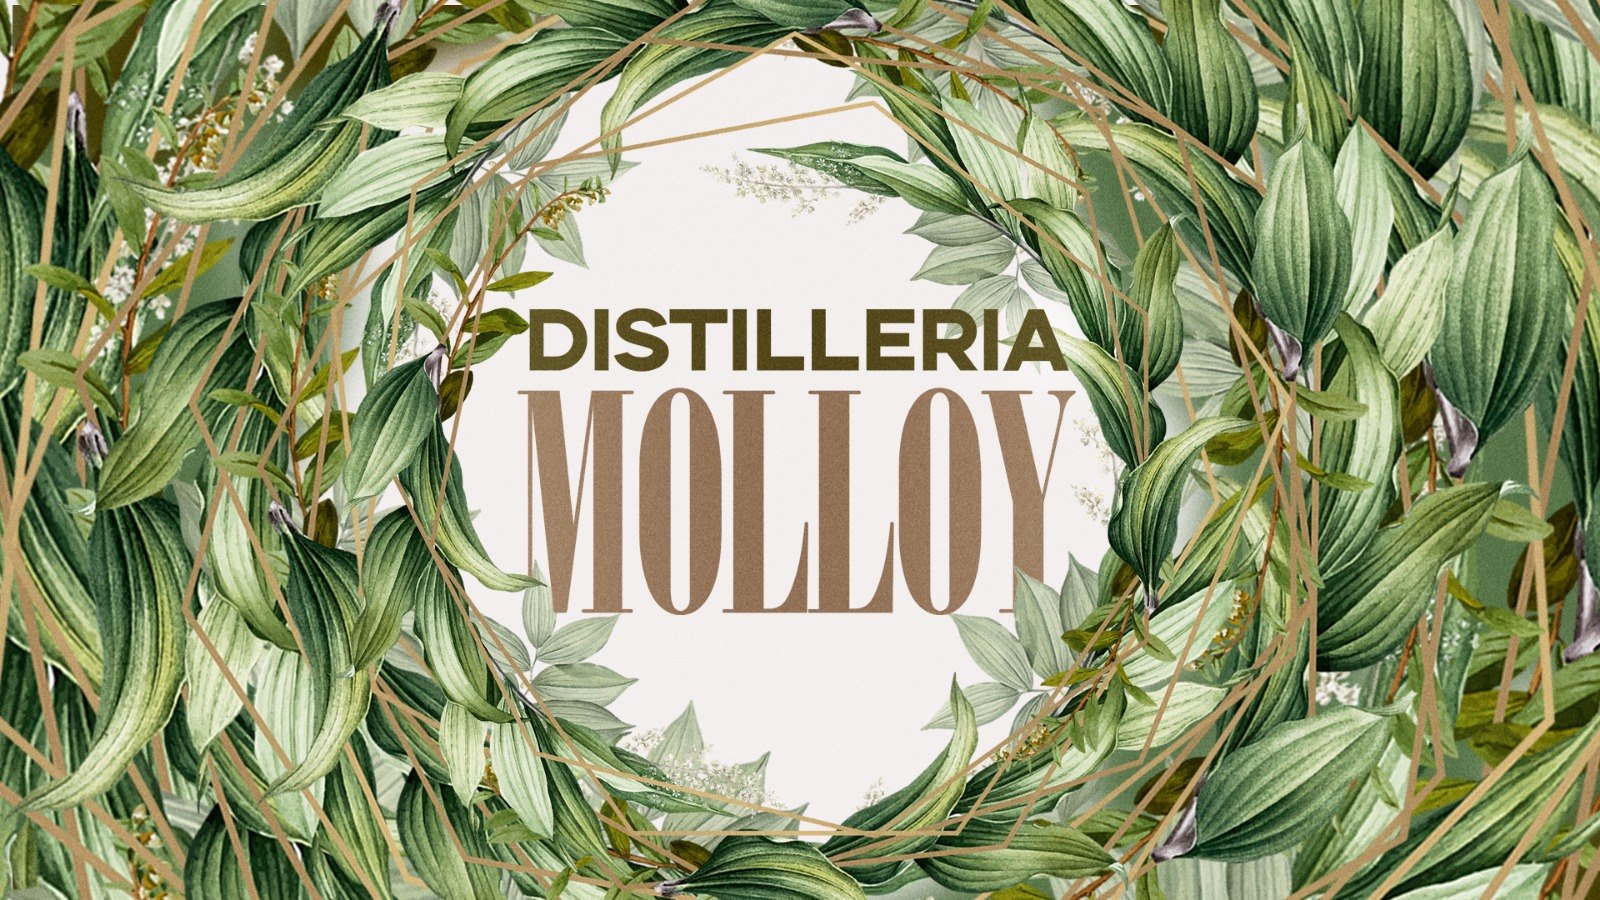 Distilleria Molloy Brescia